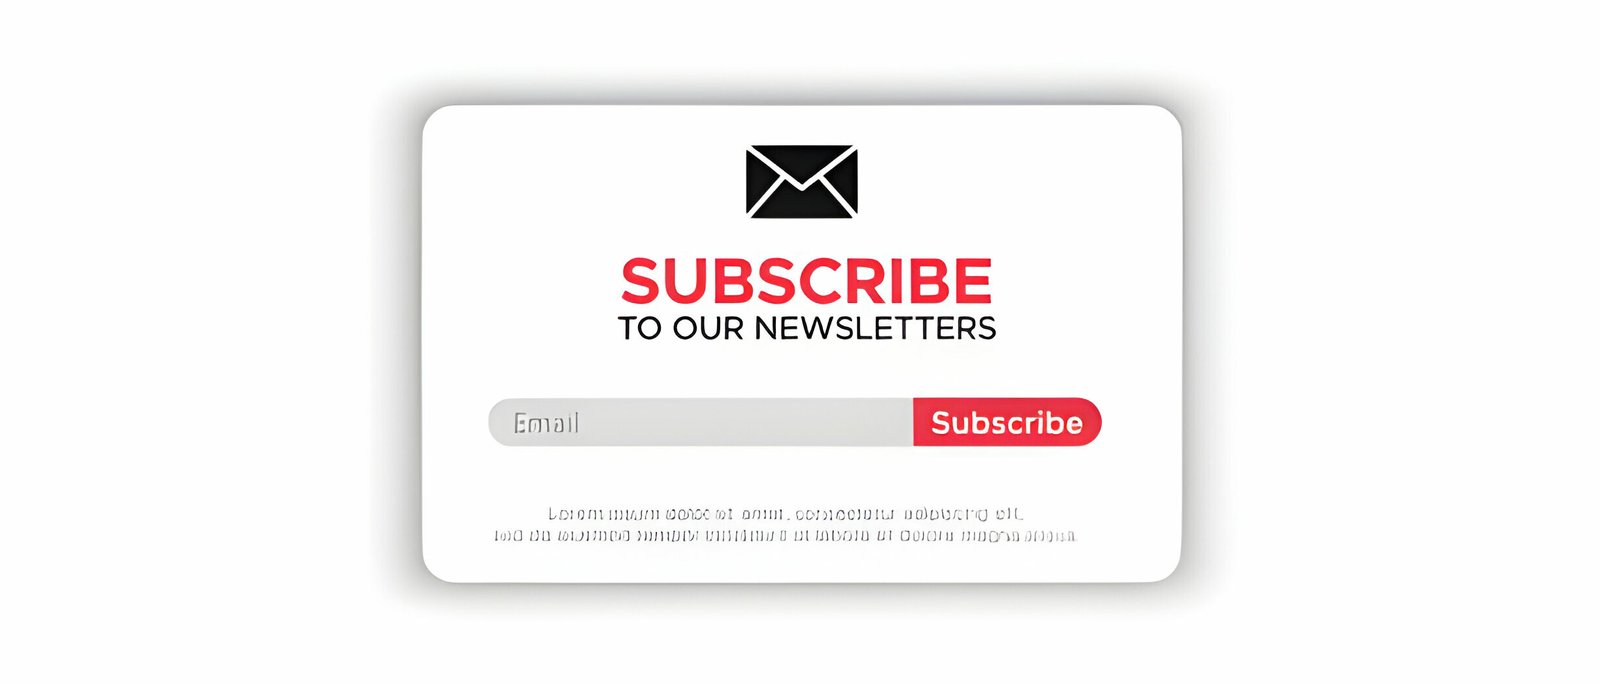 feedburner email subscription form